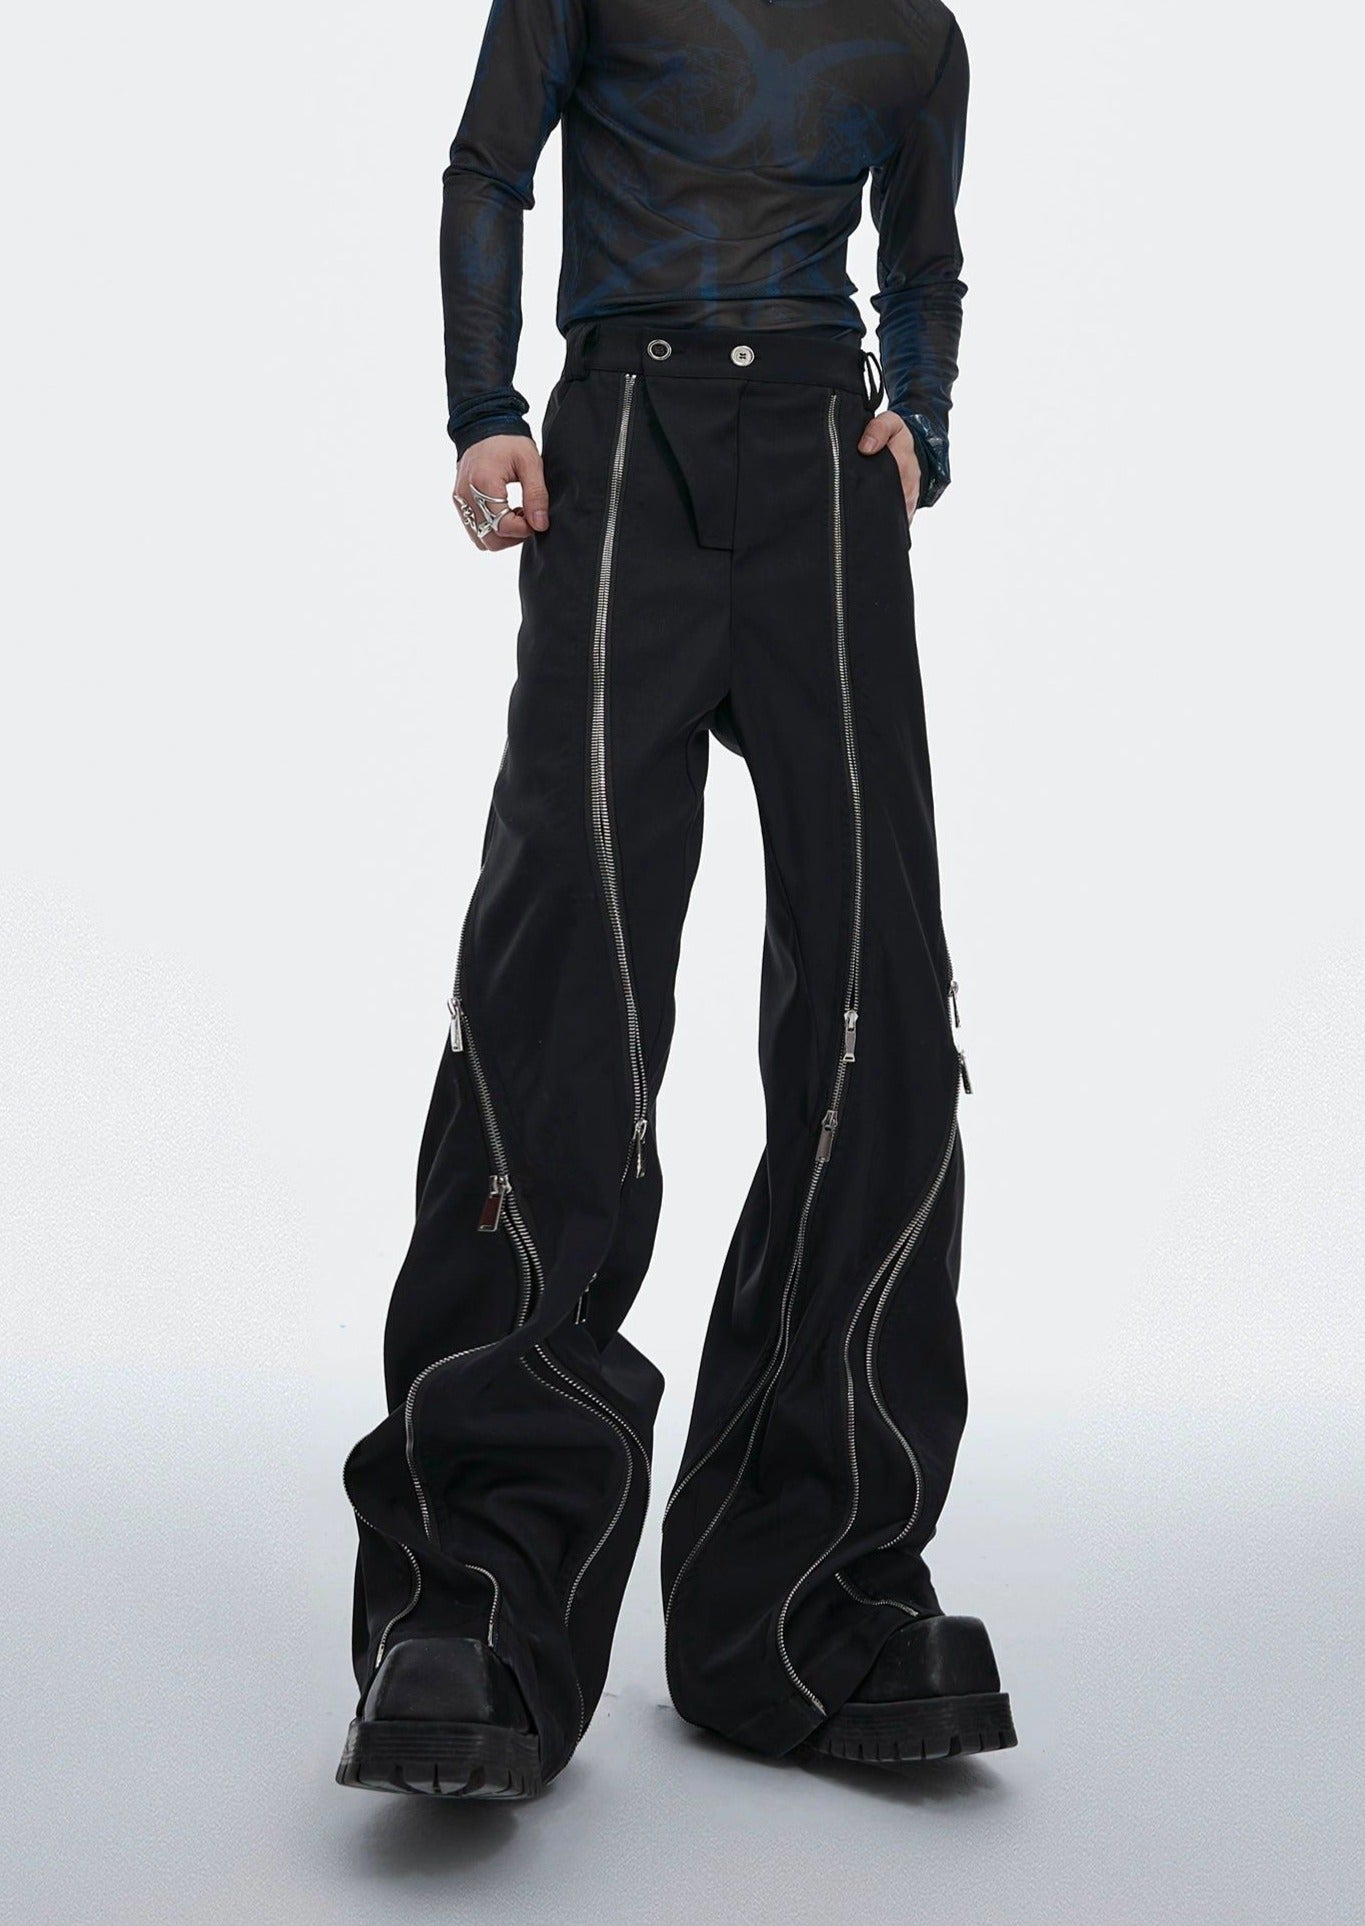 Two-Zip Diagonal Lines Pants Korean Street Fashion Pants By Argue Culture Shop Online at OH Vault